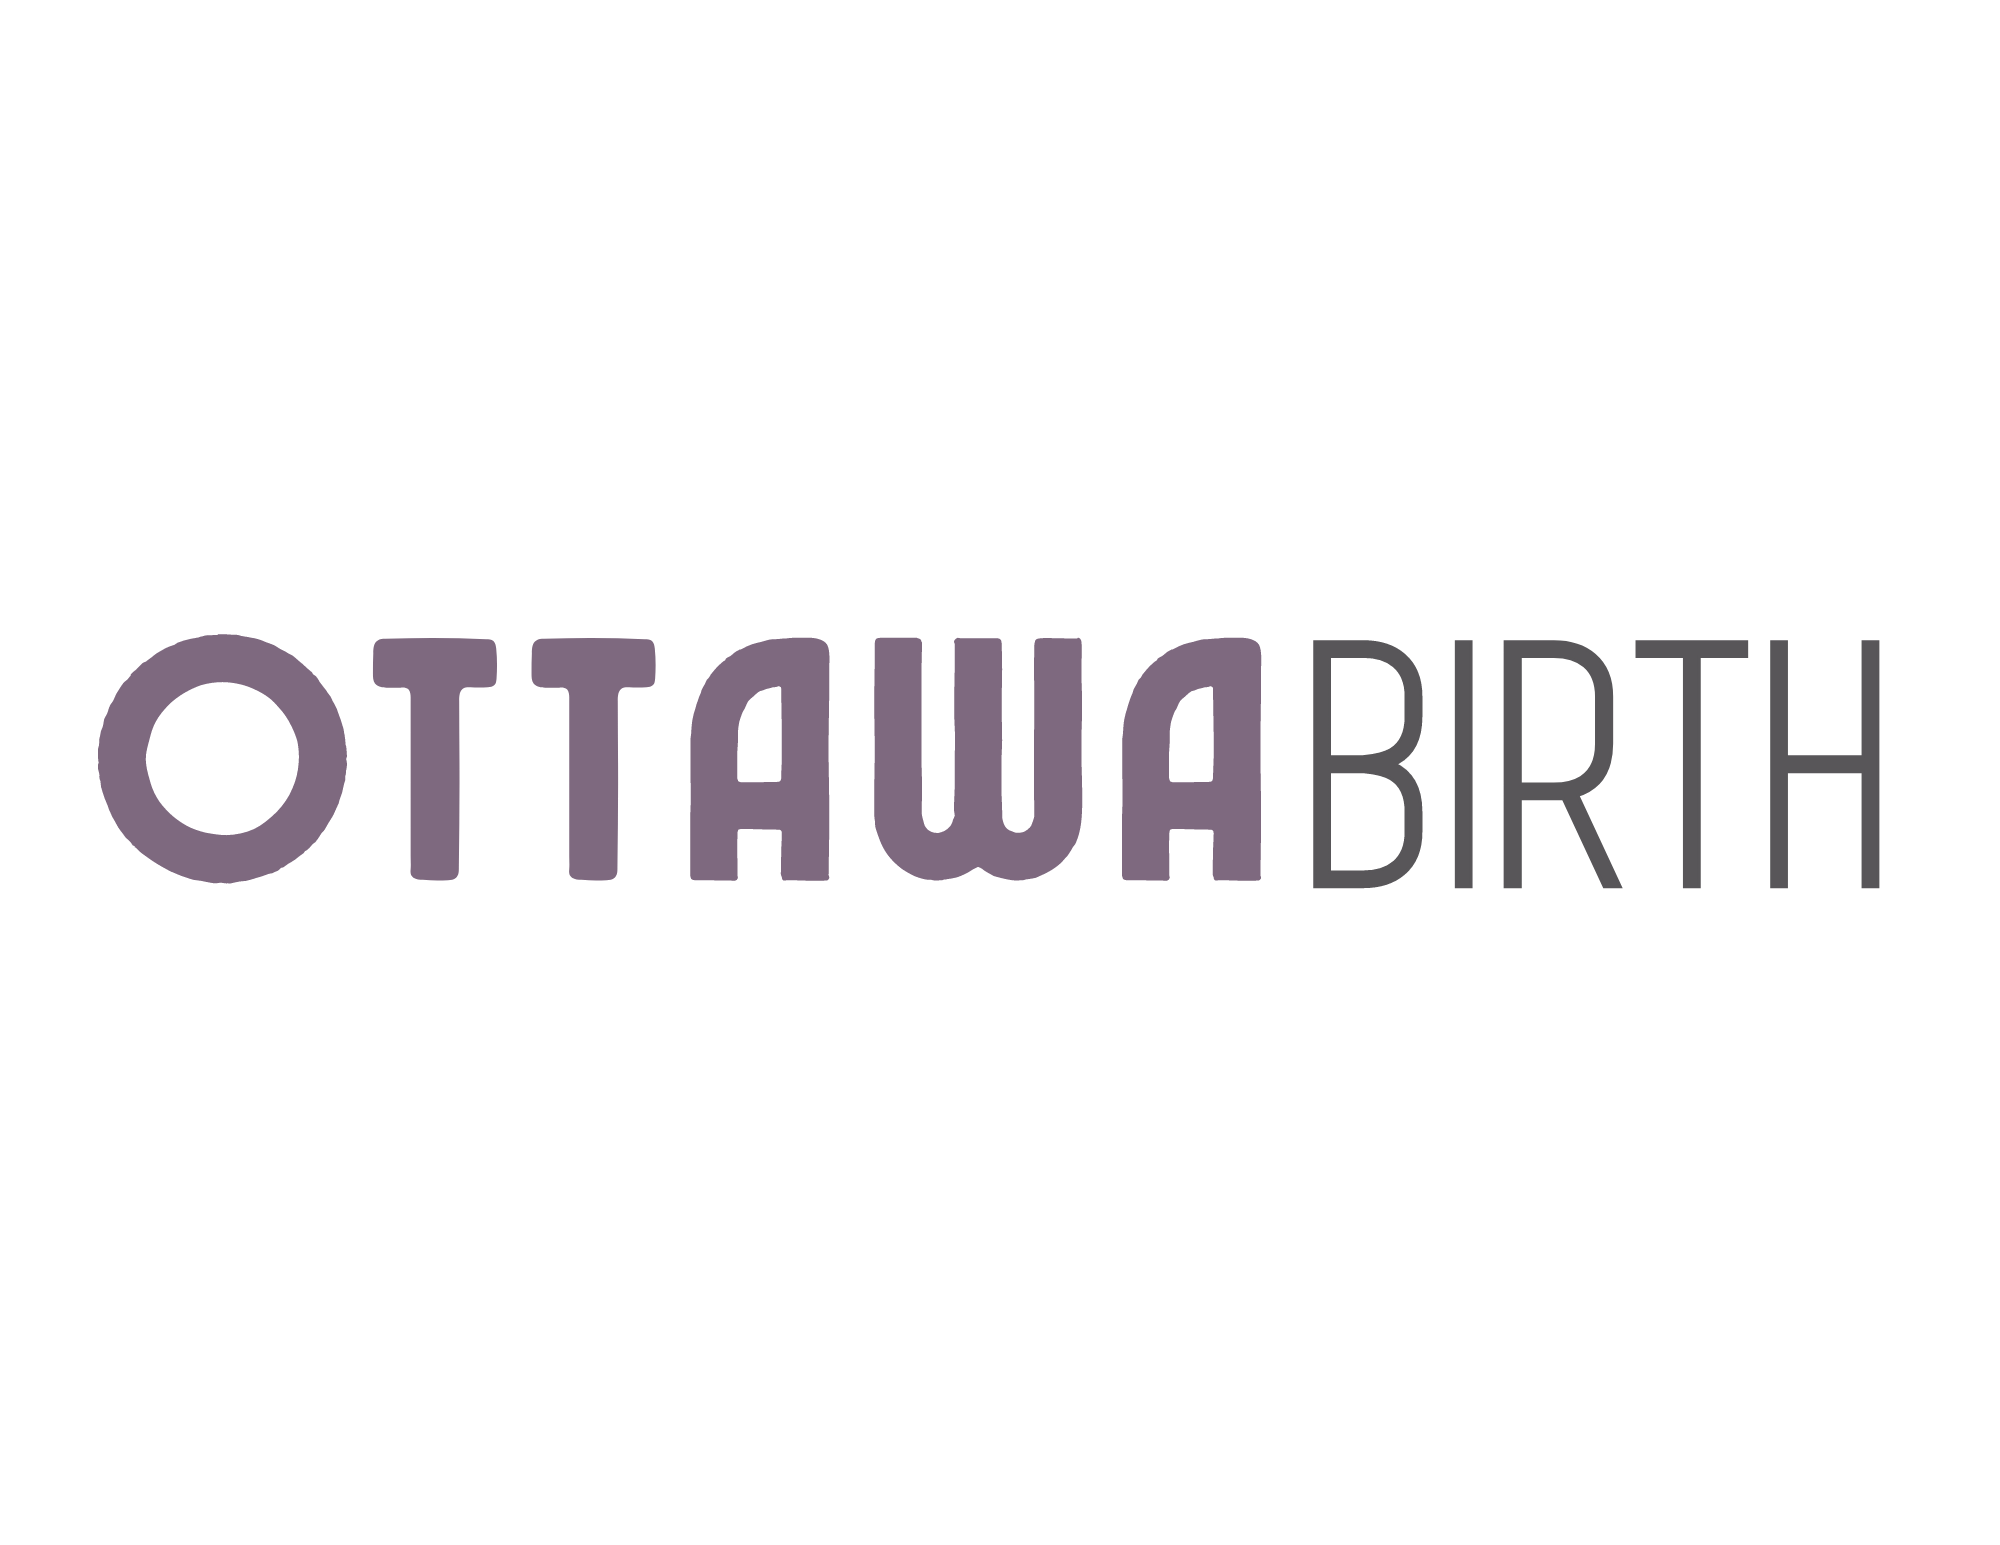 In Person Prenatal Classes in Ottawa — Ottawa Birth- Doula Support &  Education